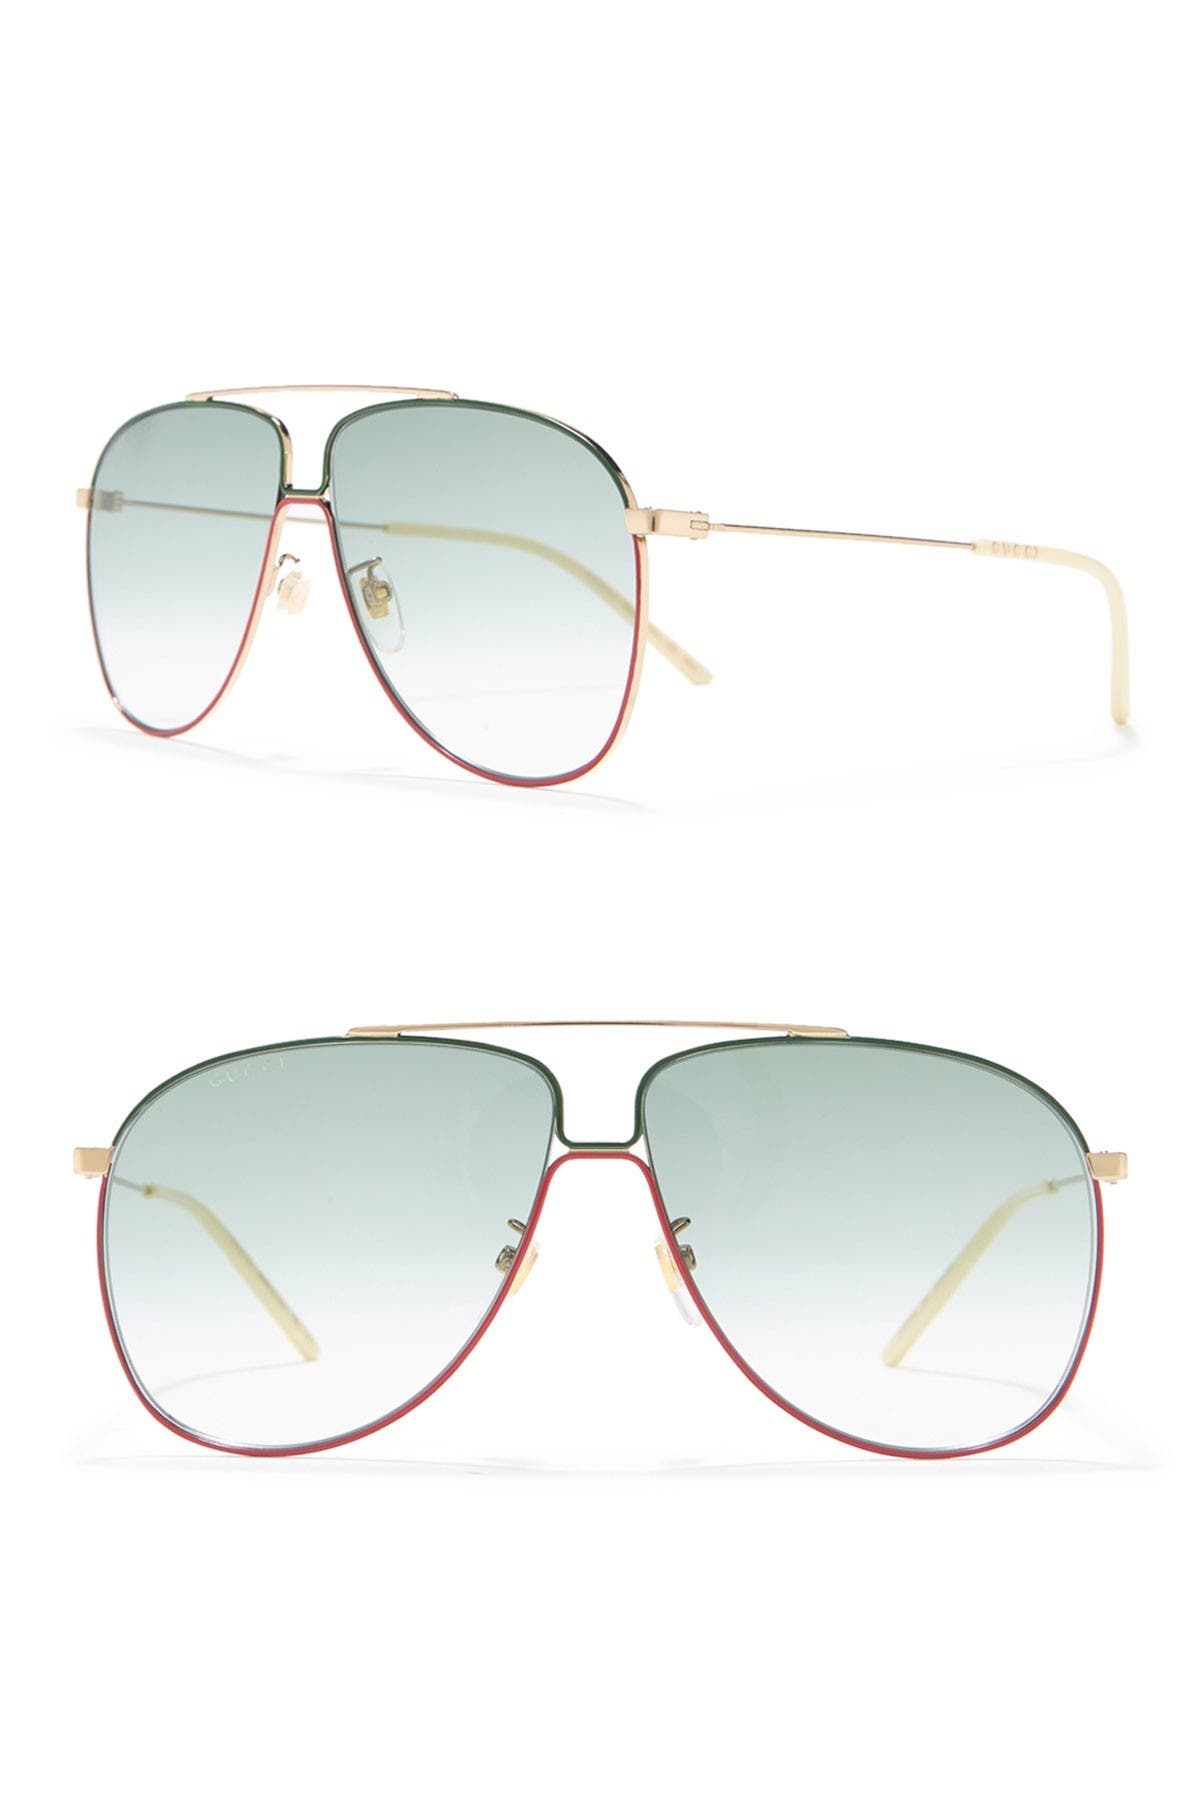 gucci wire frame sunglasses